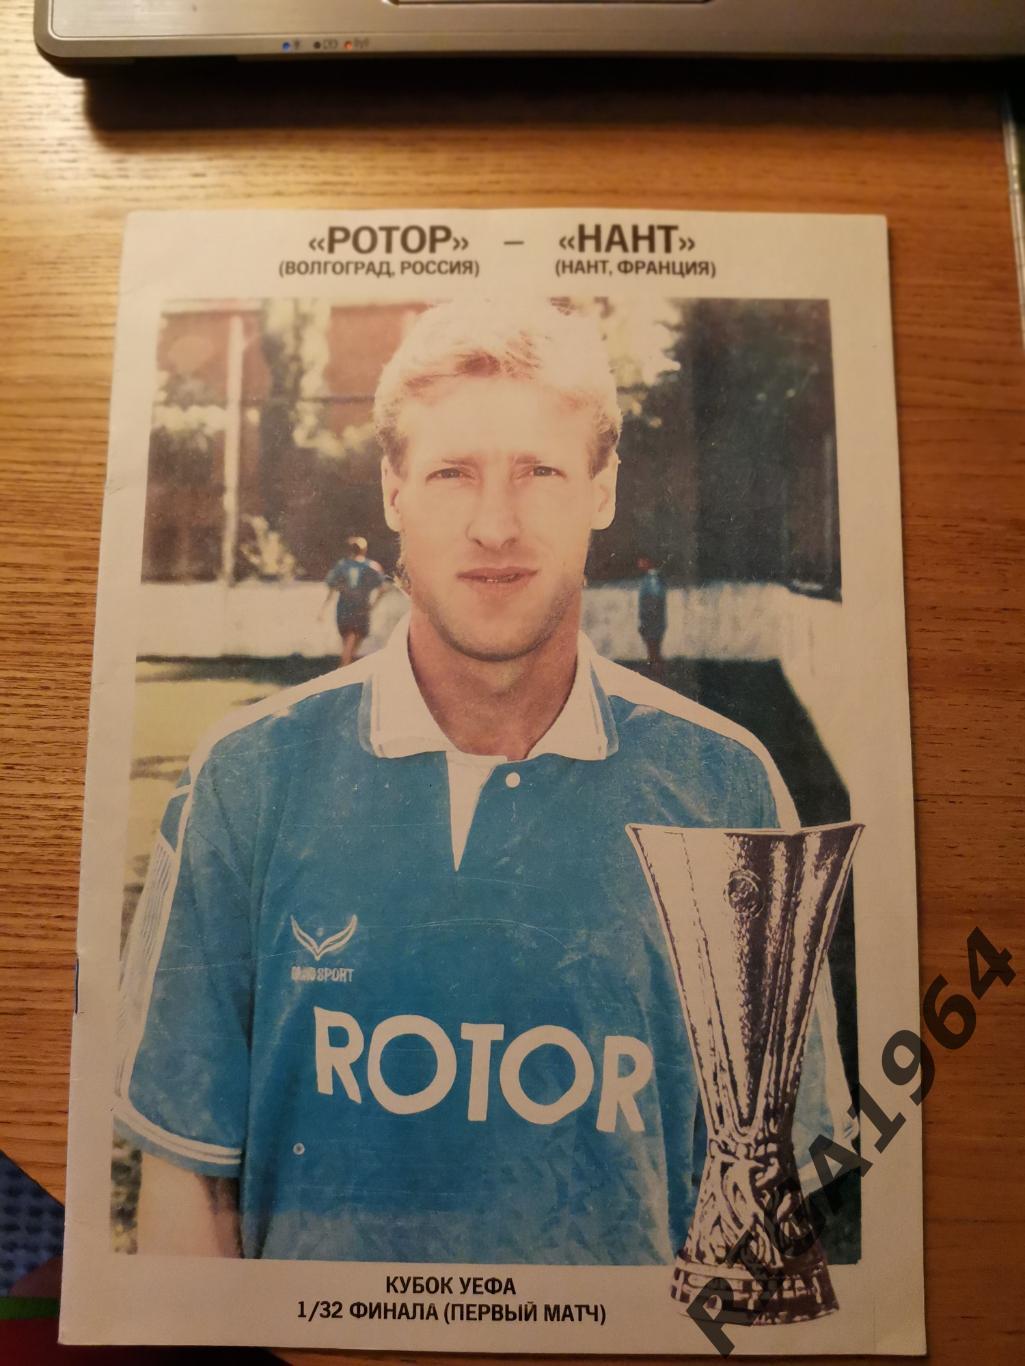 Кубок УЕФА 1994/95 Ротор Волгоград-Нант Франция